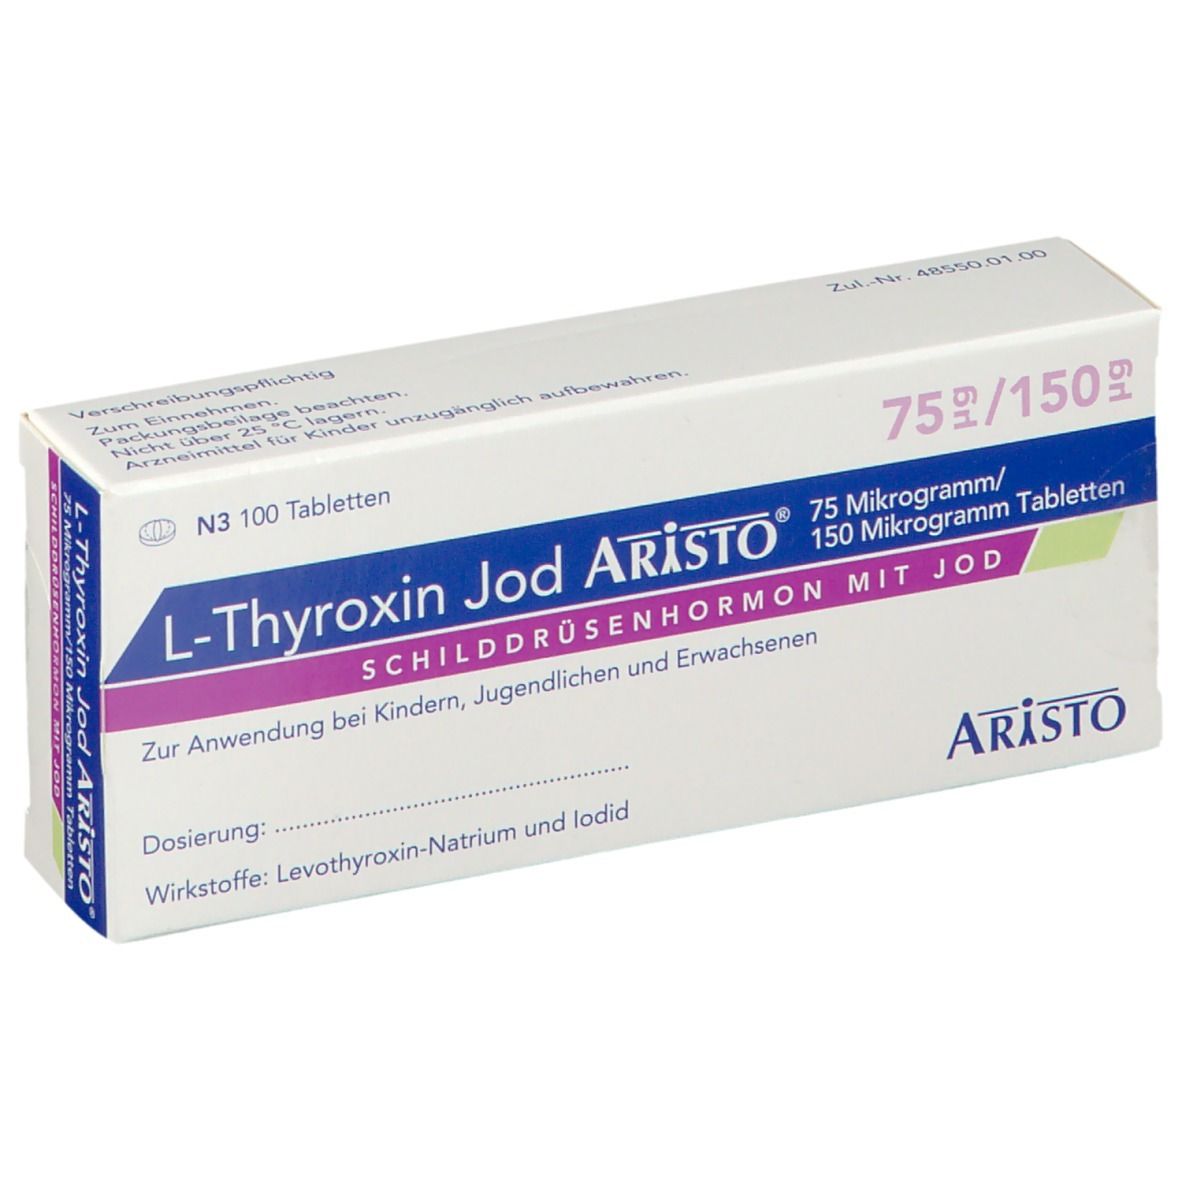 L-Thyroxin Jod Aristo® 75 µg/150 µg